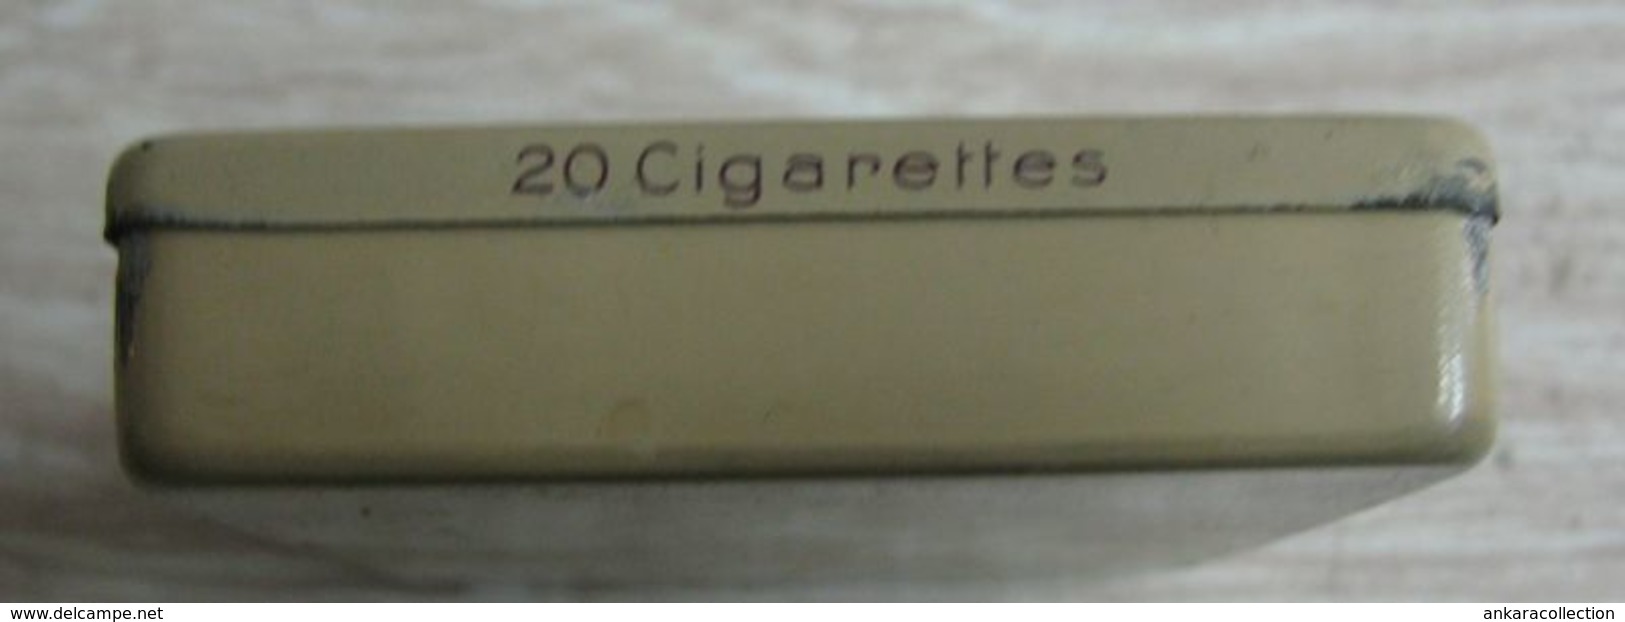 AC - DAVROS D. MISSIRIAN BRUXELLES CARTE ROYALE CIGARETTE - TOBACCO EMPTY VINTAGE TIN BOX - Contenitori Di Tabacco (vuoti)